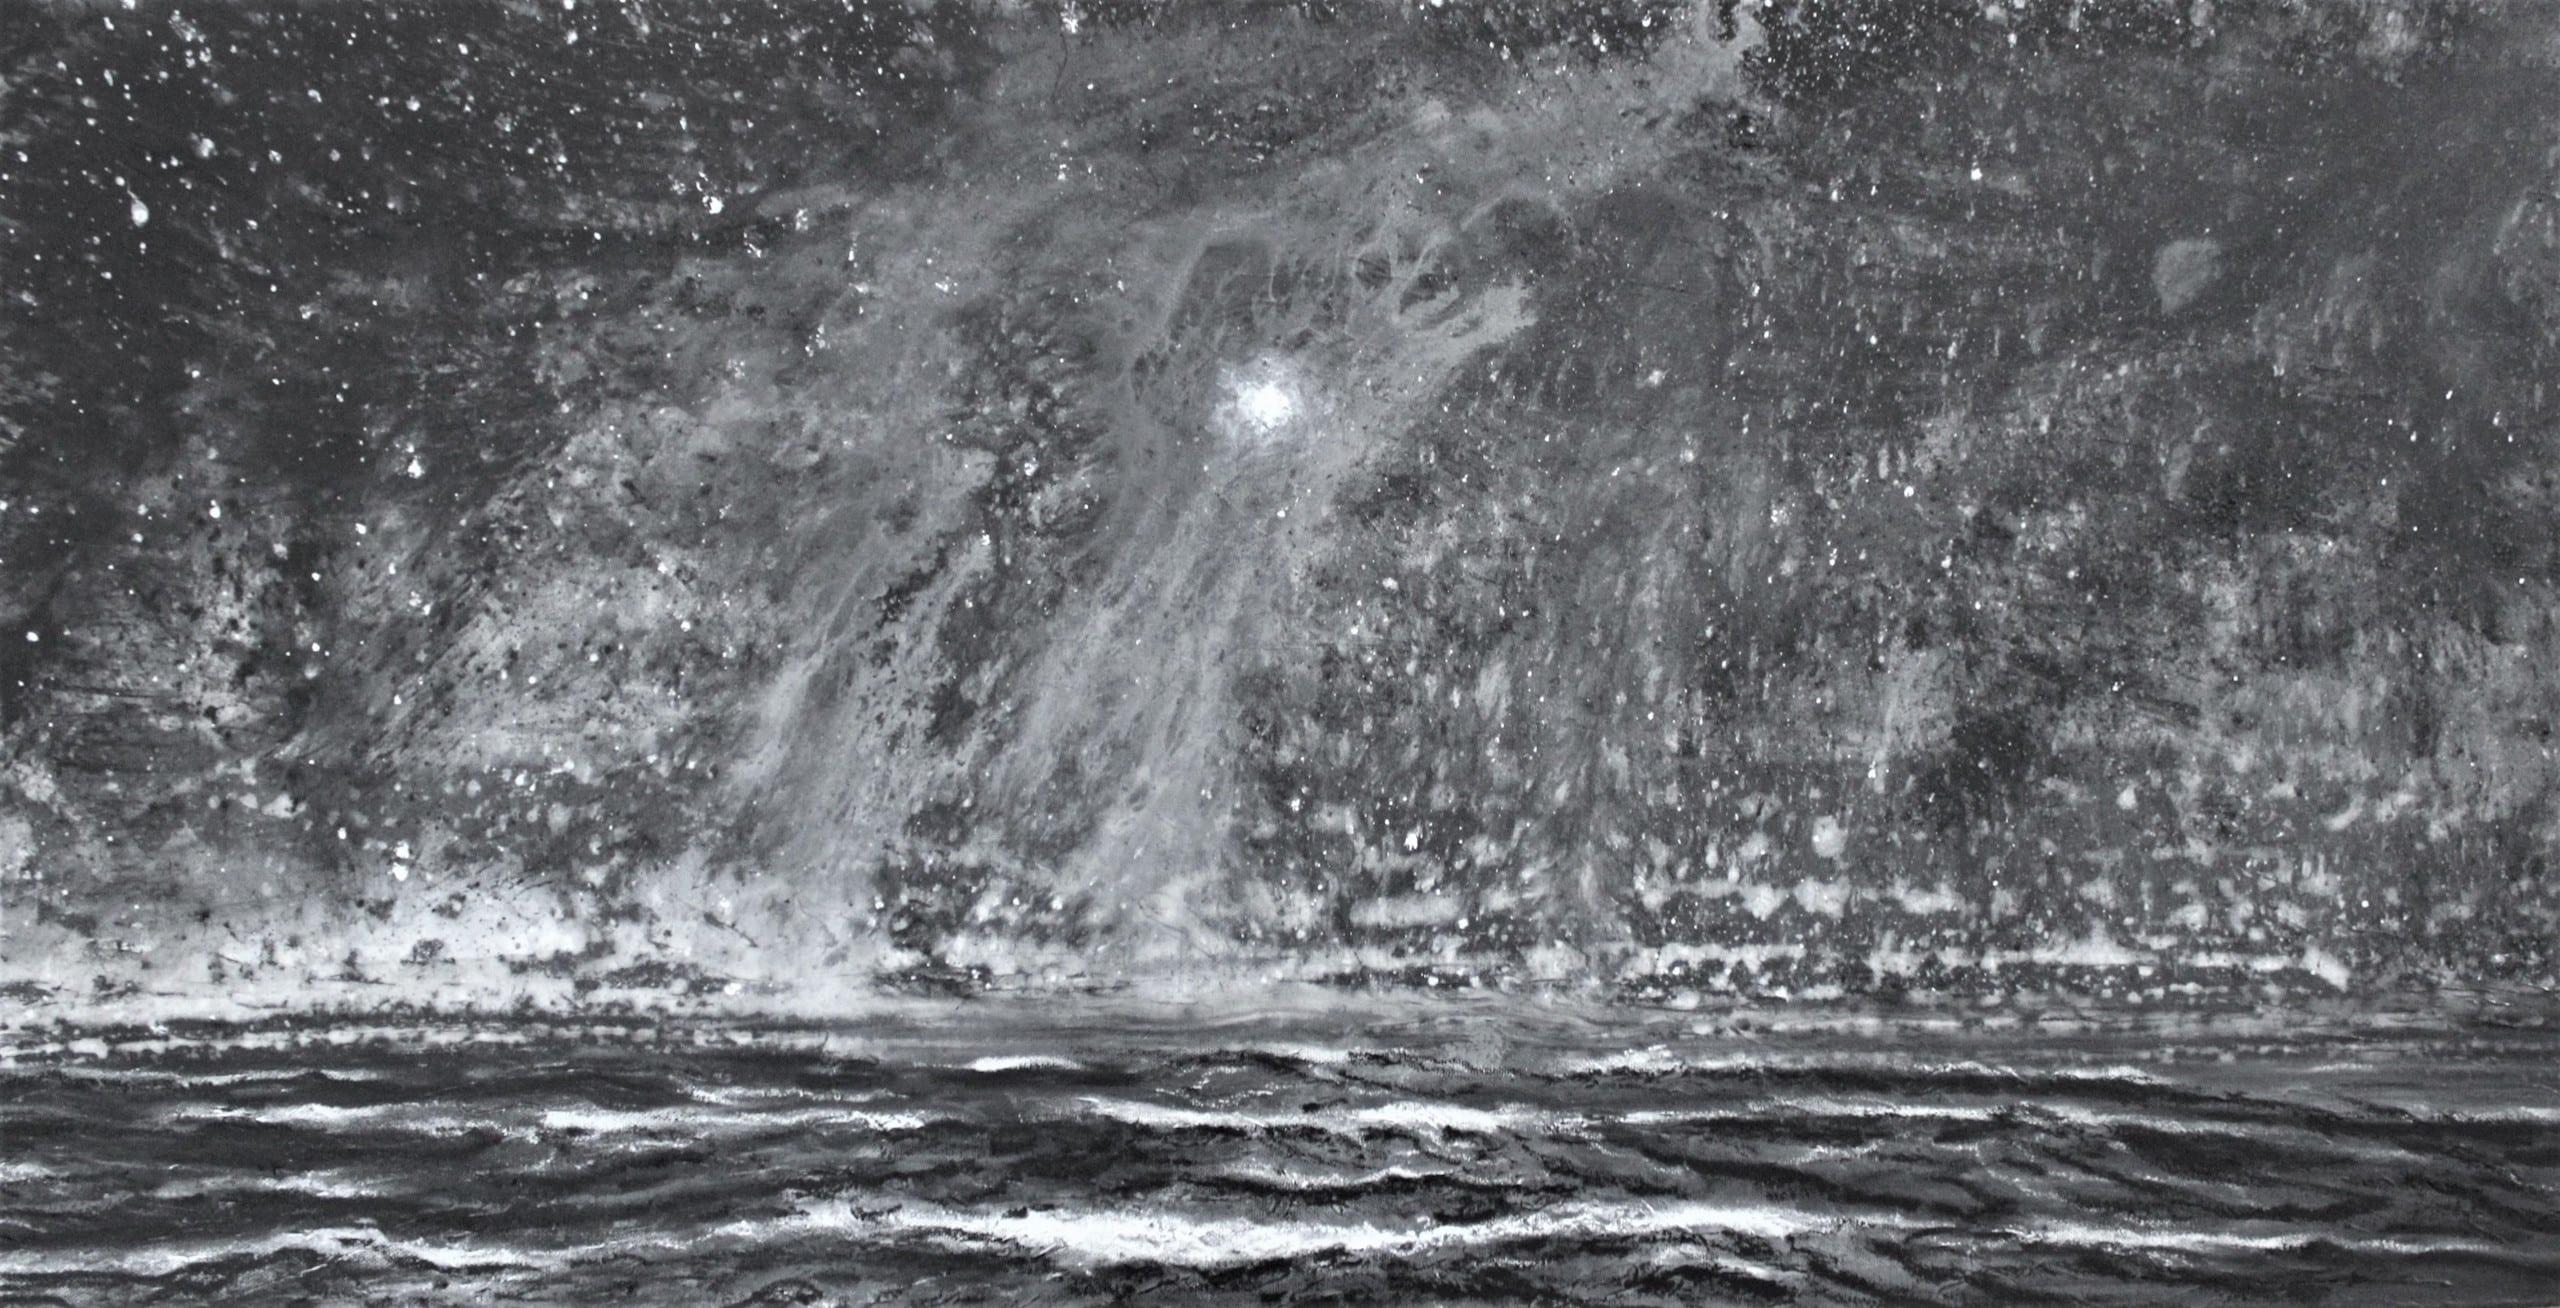 The deluge by Franco Salas Borquez - Black & white painting, ocean waves, sea